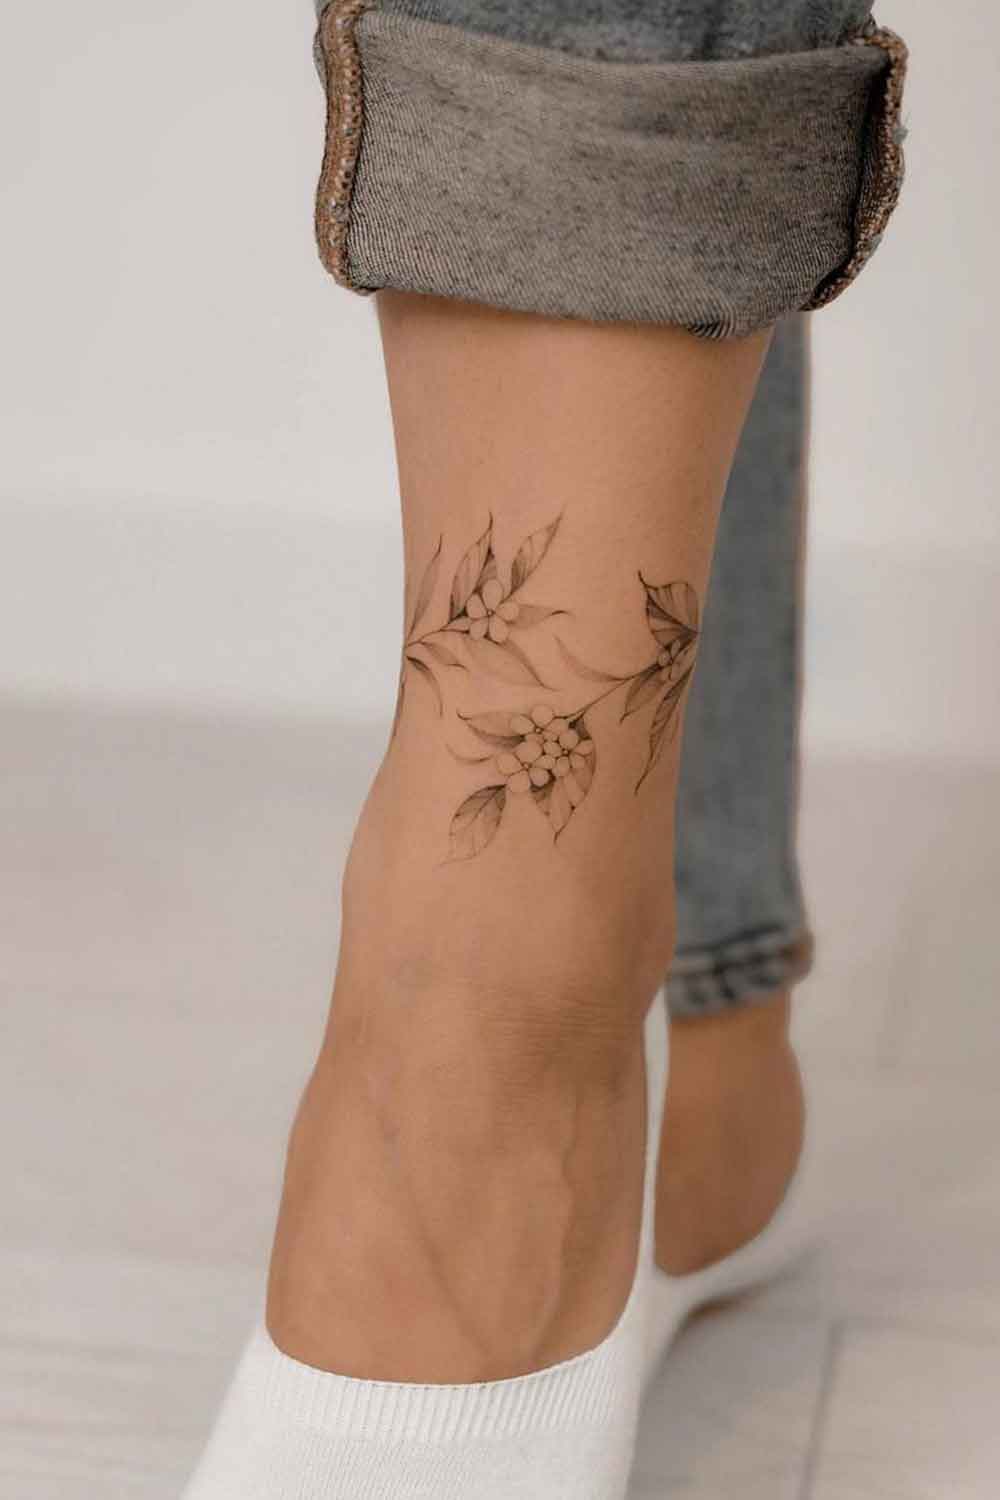 tatuagens-femininas-no-tornozelo-11 